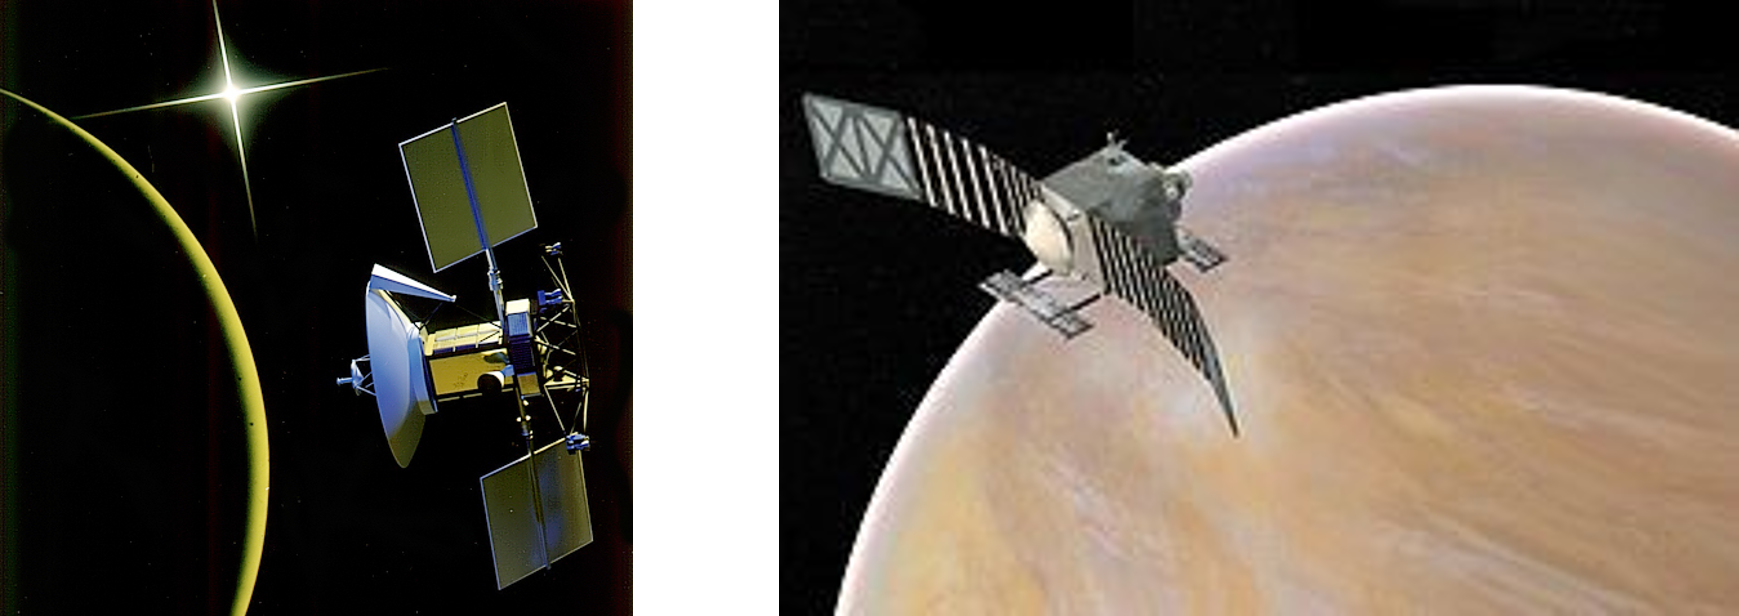 (좌) 1989년의 마젤란 금성 탐사선입니다. 출처: NASA (우) 베리타스 탐사선의 컨셉아트입니다. 출처: NASA/JPL-Caltech